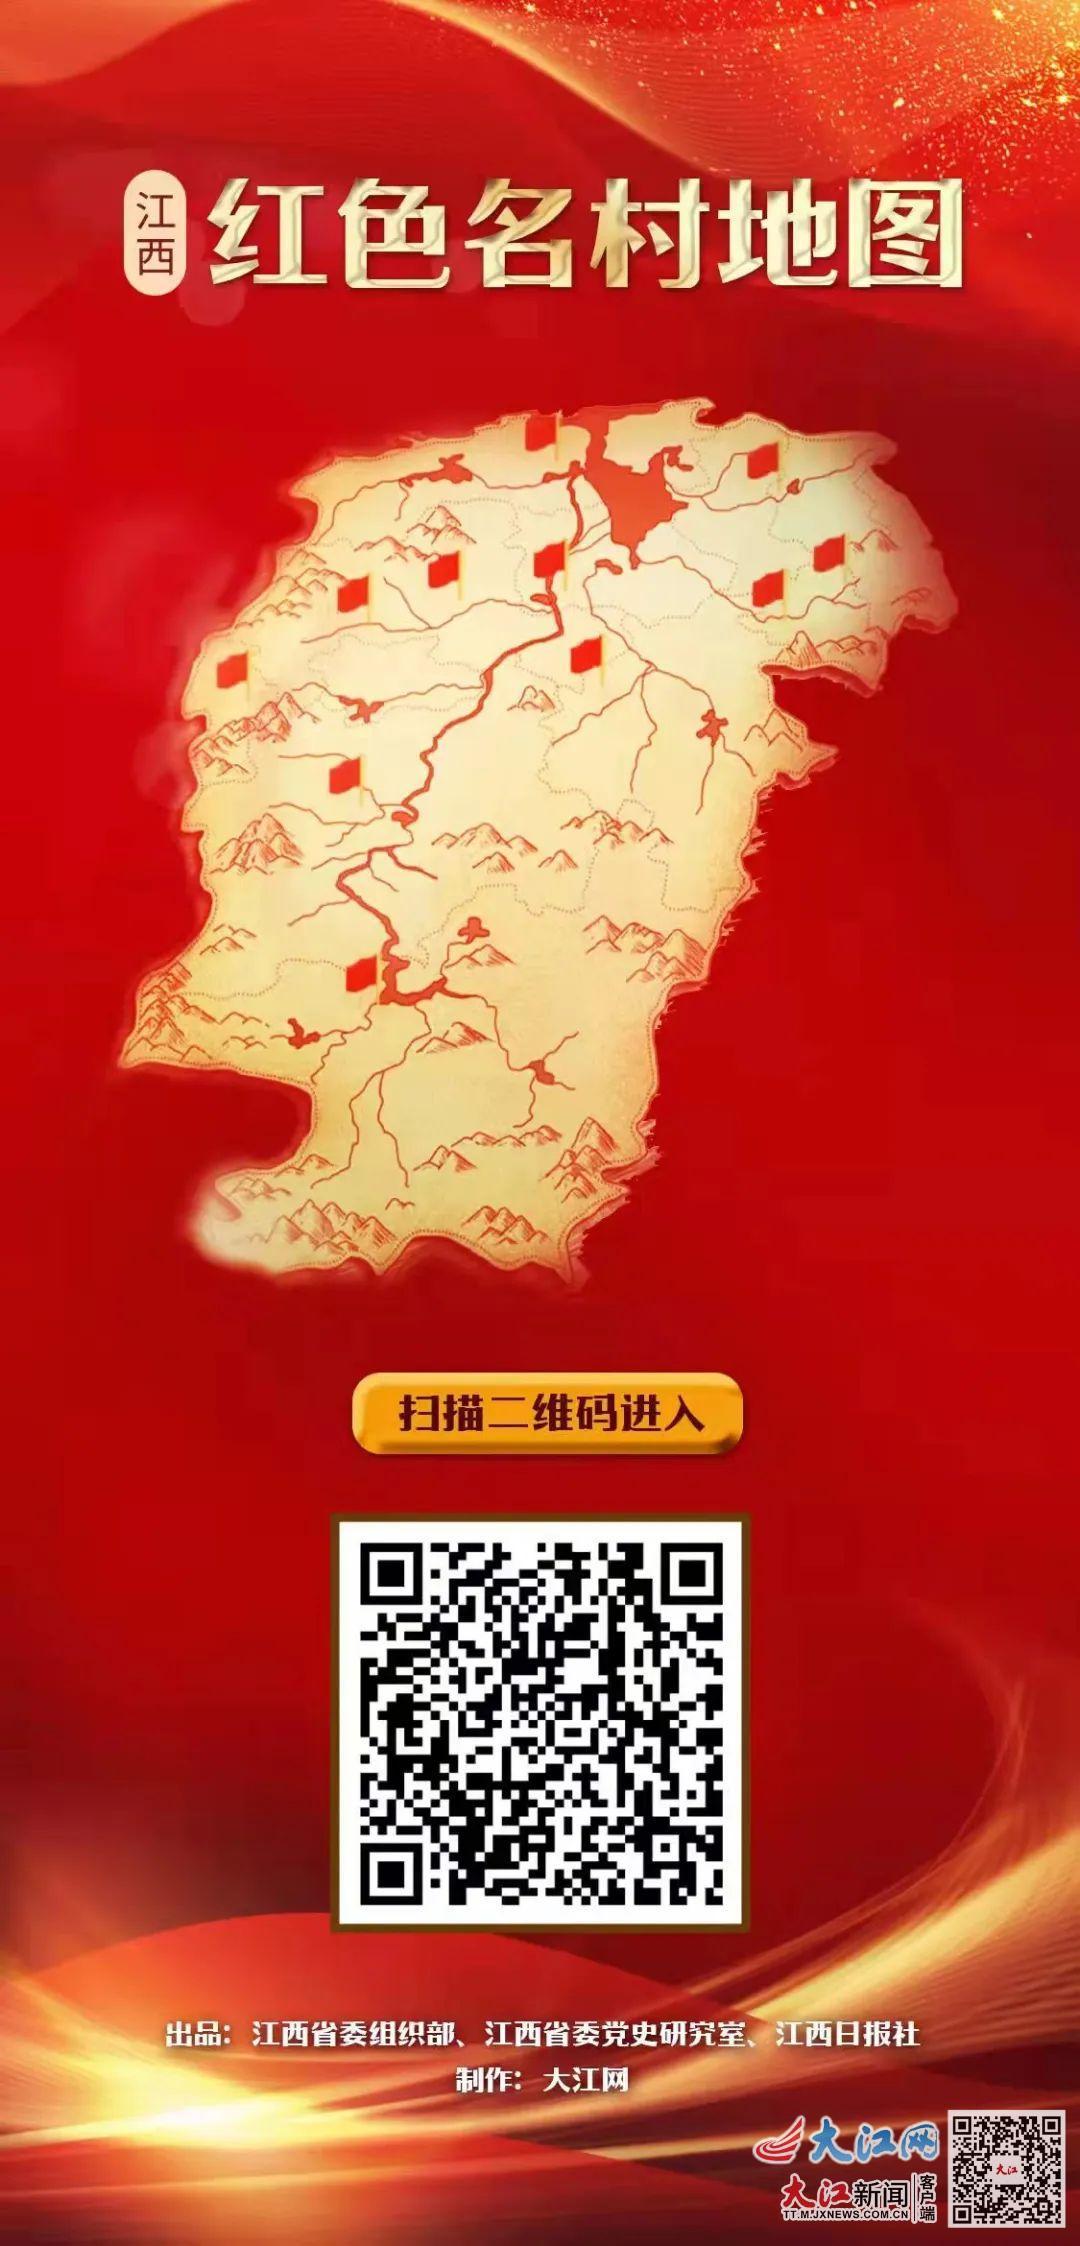 走进红色地图 感受红色历史_旅游_郴州站_红网